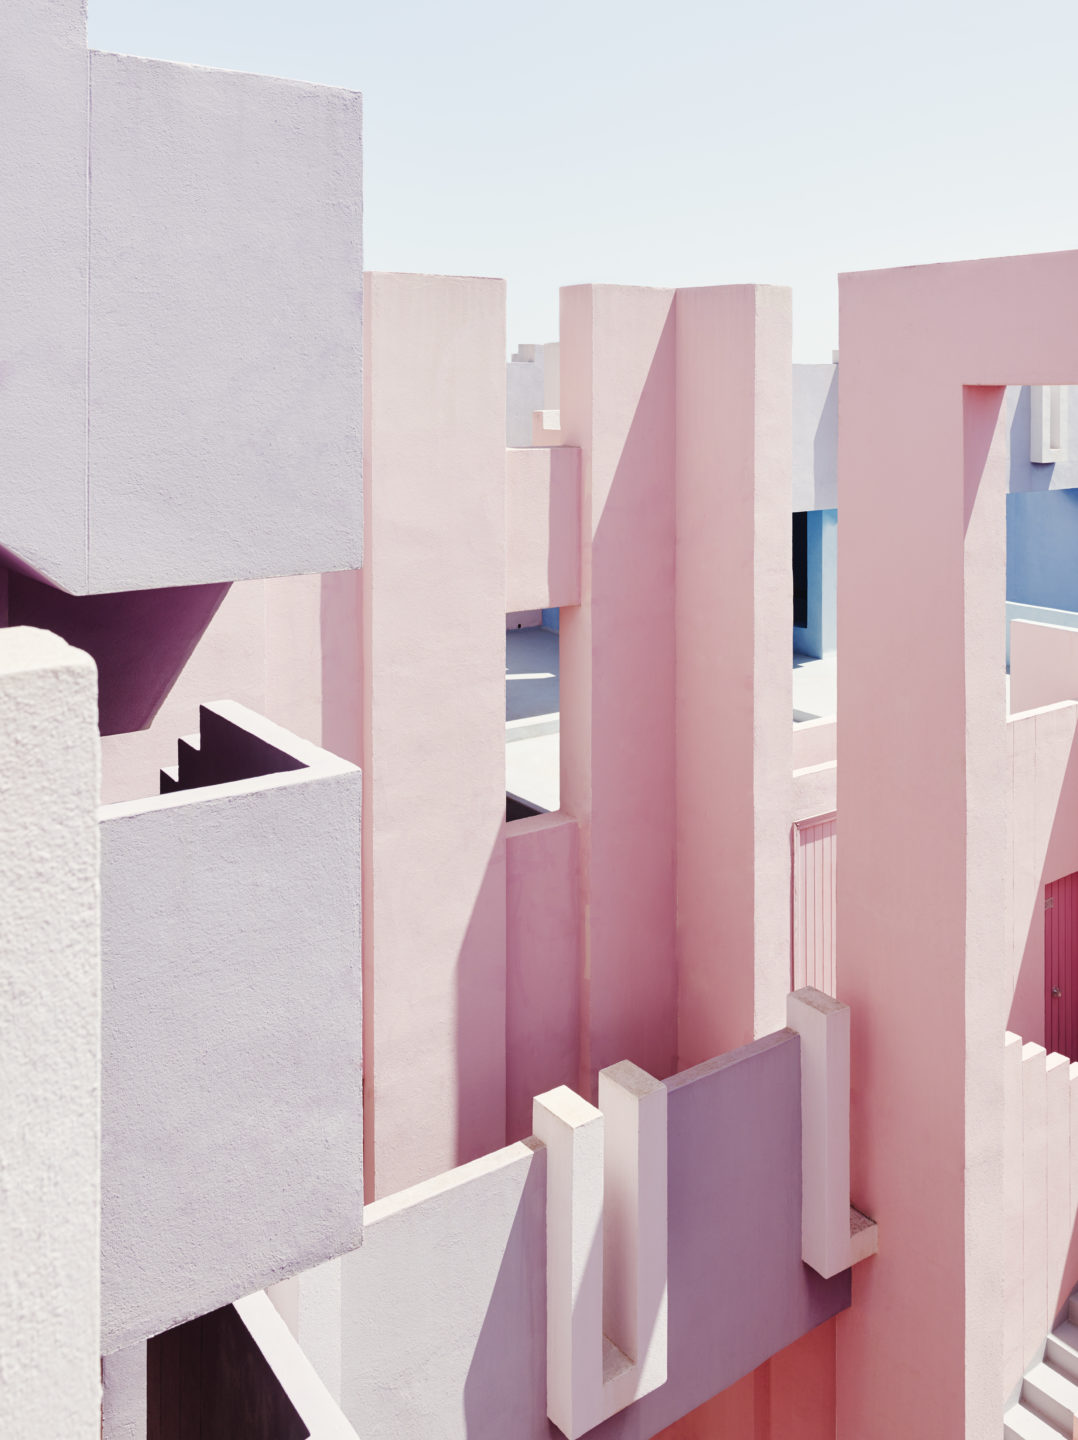 La Muralla Roja modern Spanish architecture designed by Ricardo Bofil. Pastel pink colourful building..